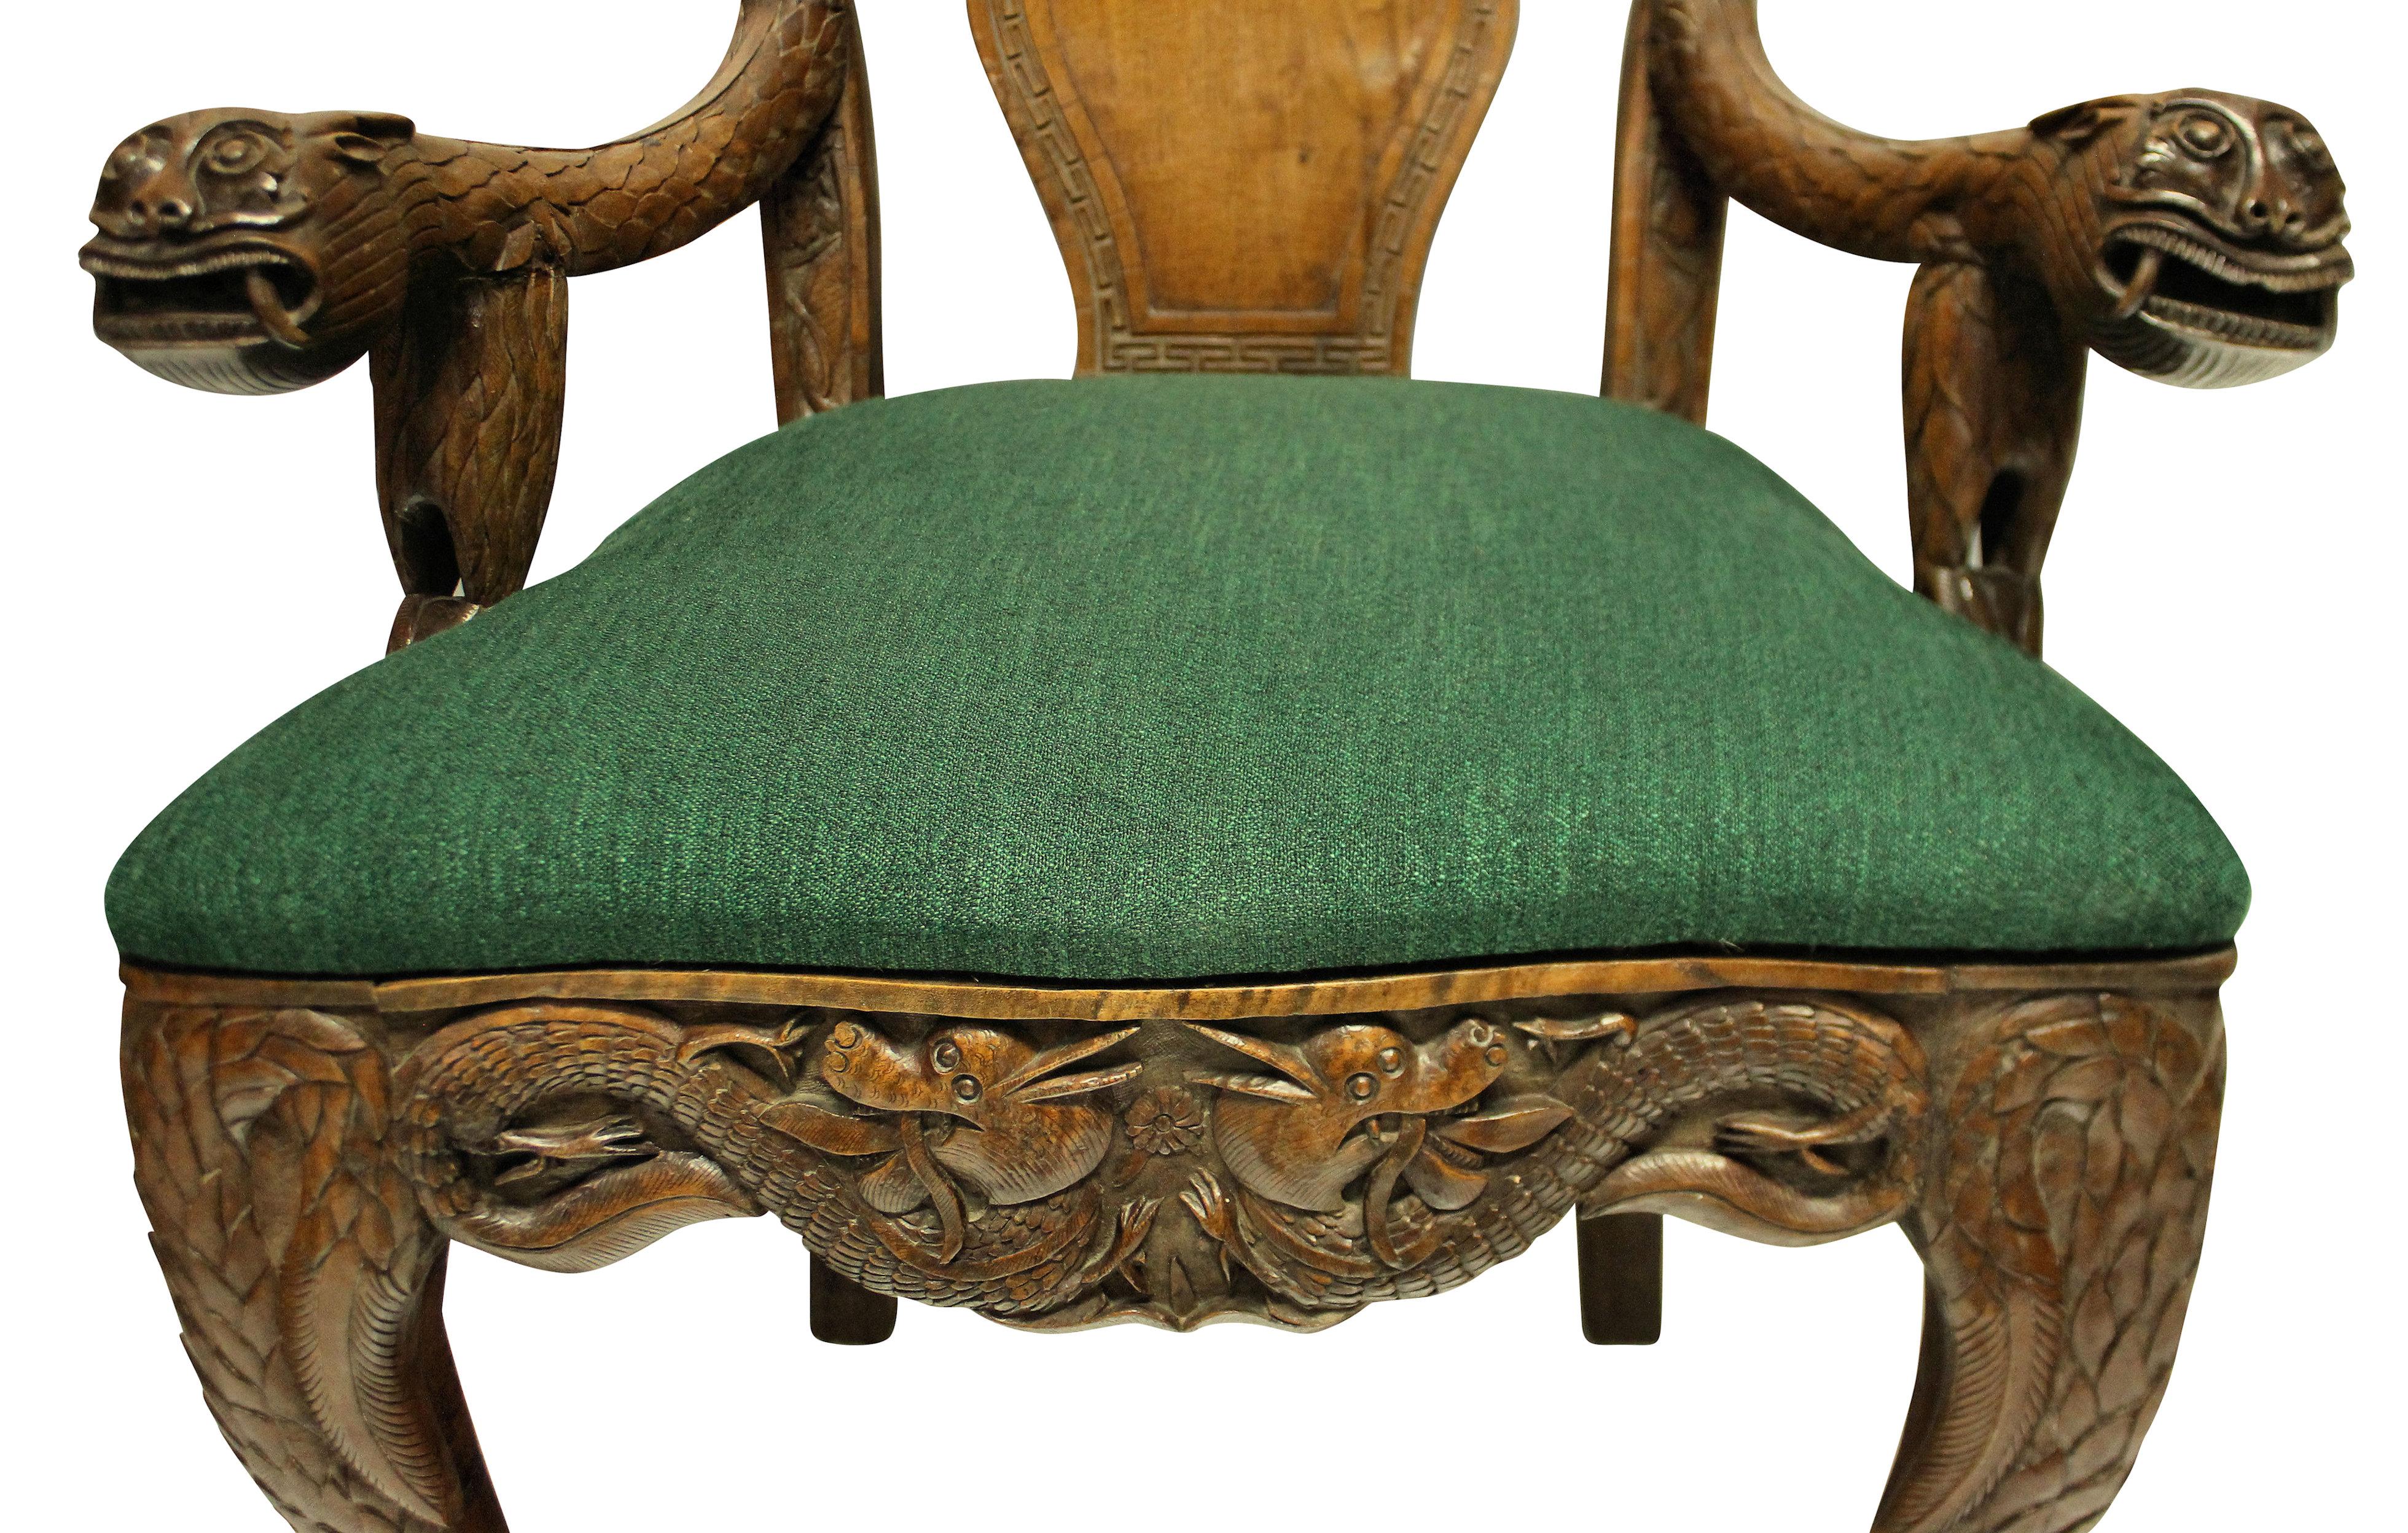 Une paire de fauteuils chinois en teck massif, finement sculptés et très décoratifs. Les chaises sont pleines de symbolisme et de sens, avec des lions, des dragons, des chauves-souris, des fleurs de lotus et des symboles. Avec des sièges